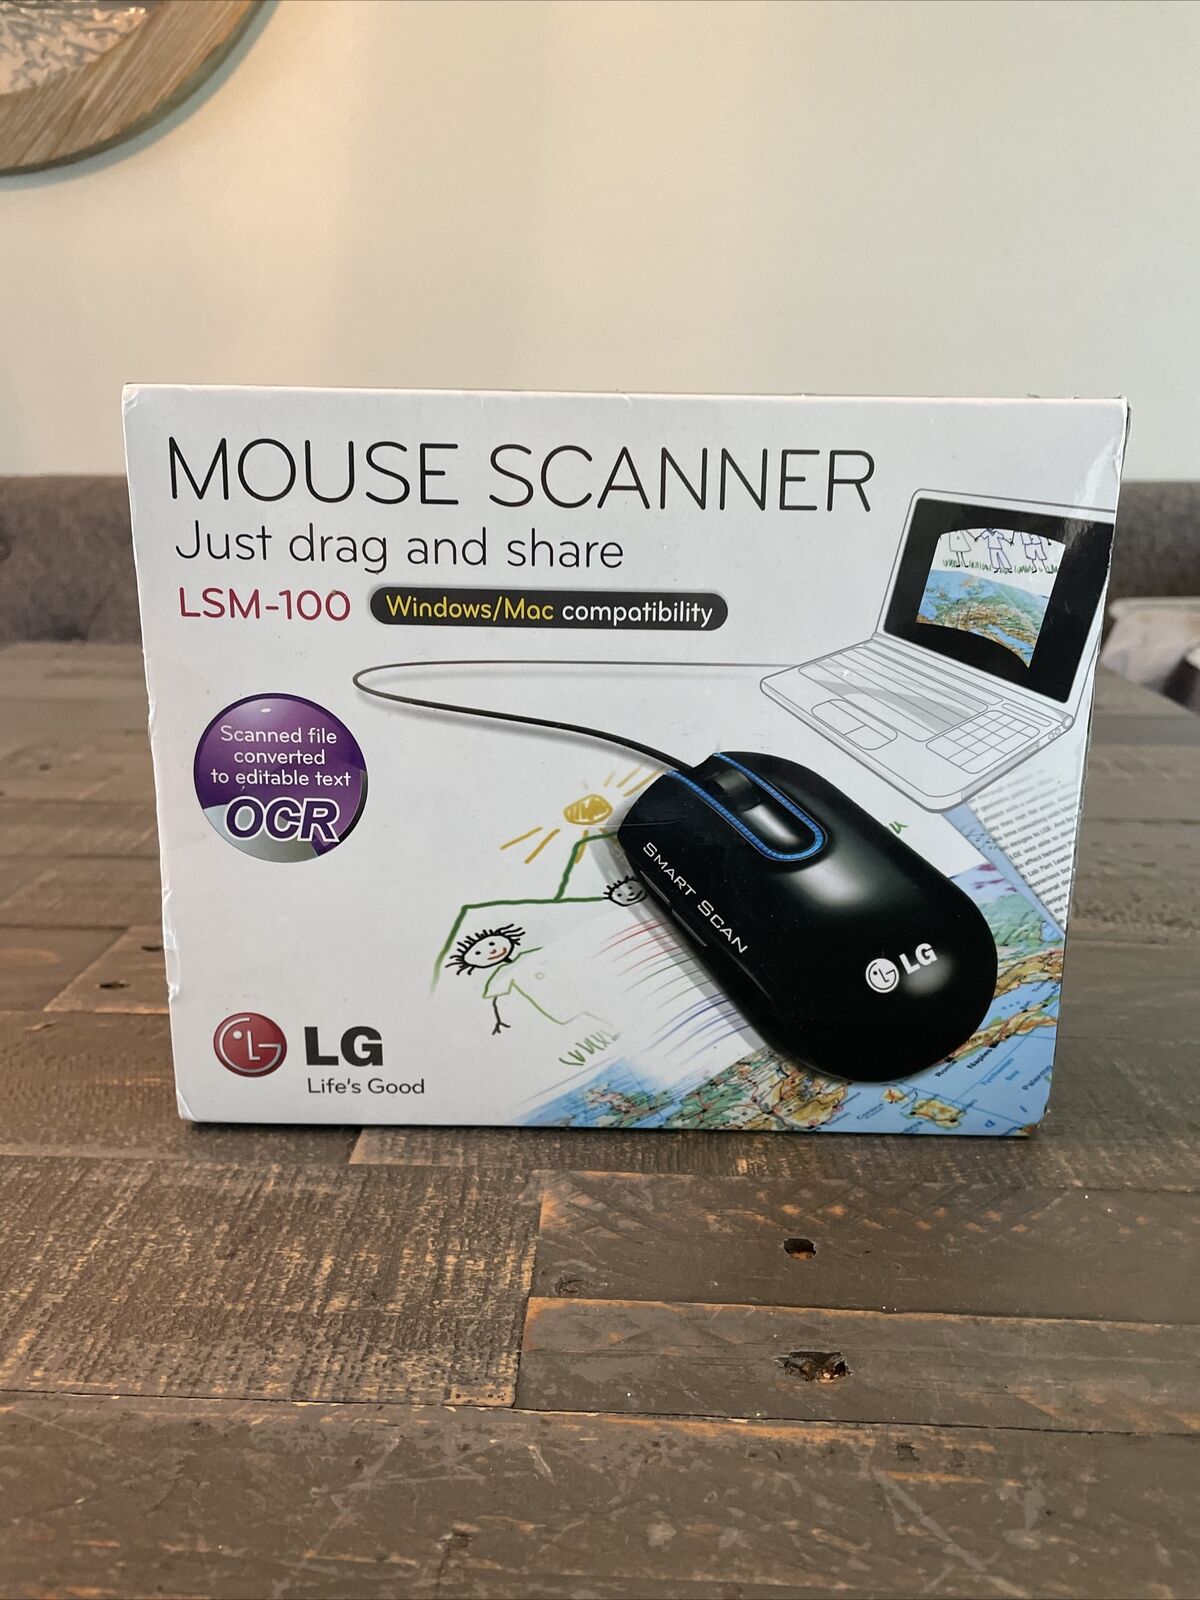 LG Smart Scan Black Computer USB 1200 DPI Mouse Model LSM-100 Scanner JH6